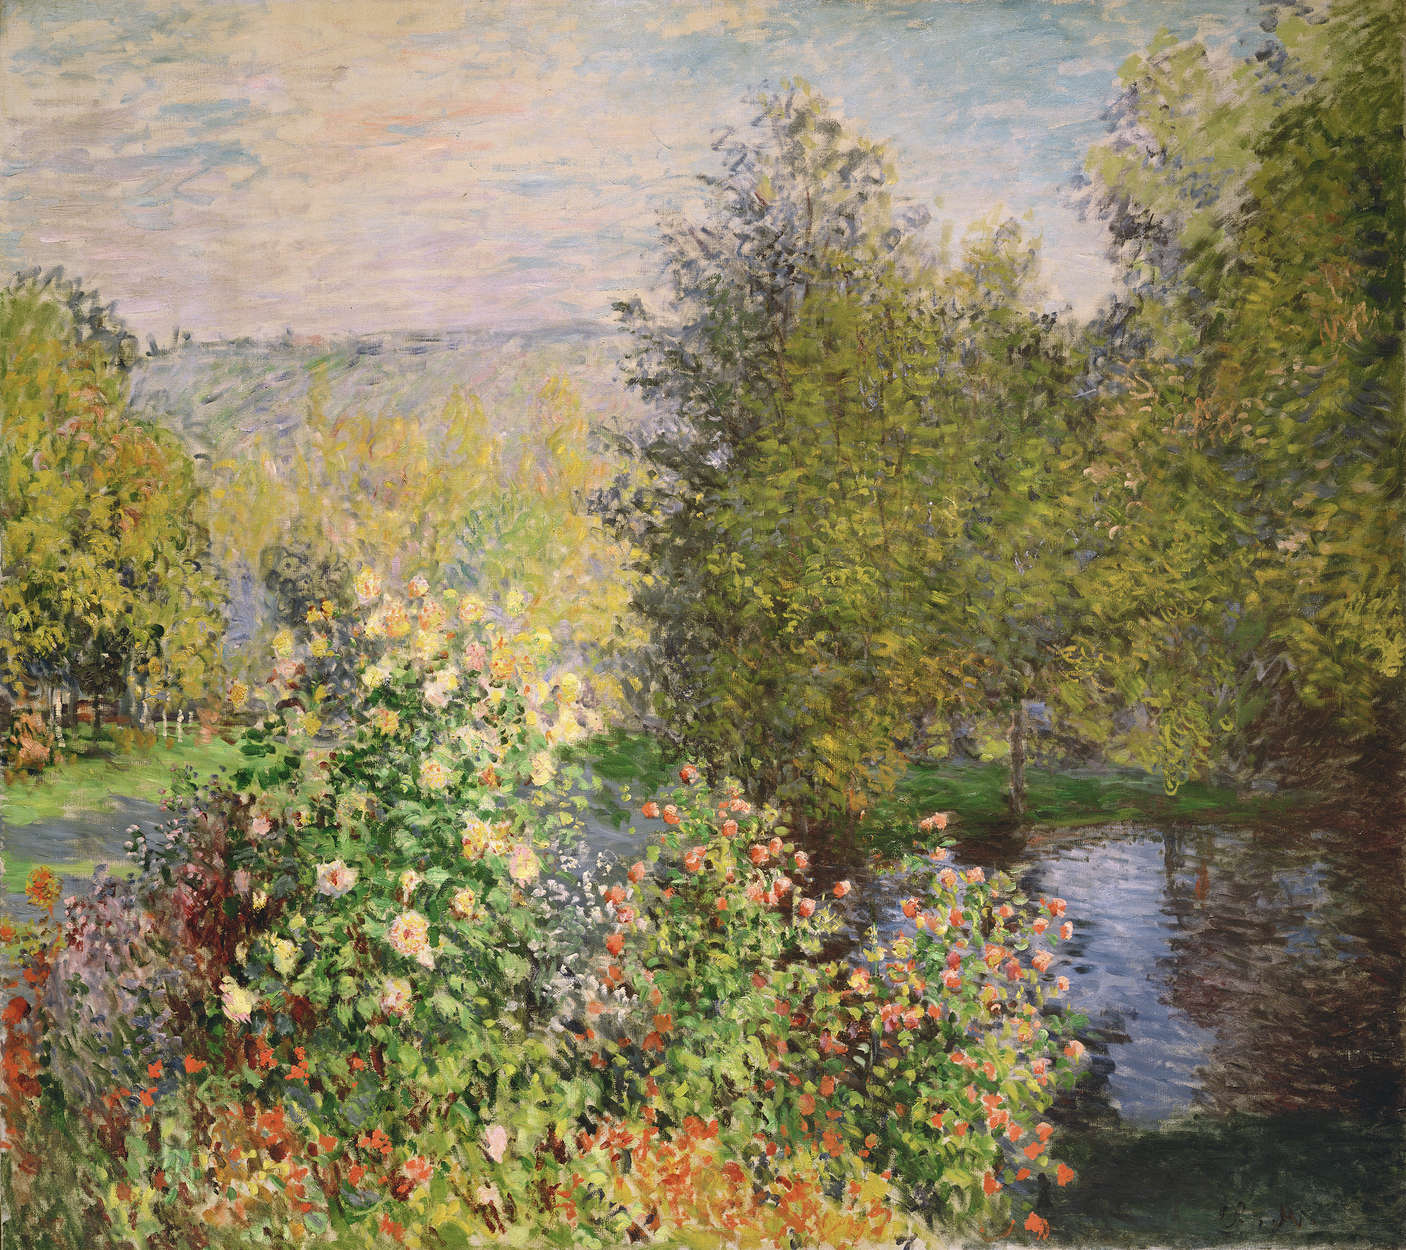             Muurschildering "Een hoekje van de tuin in Montgeron" van Claude Monet
        